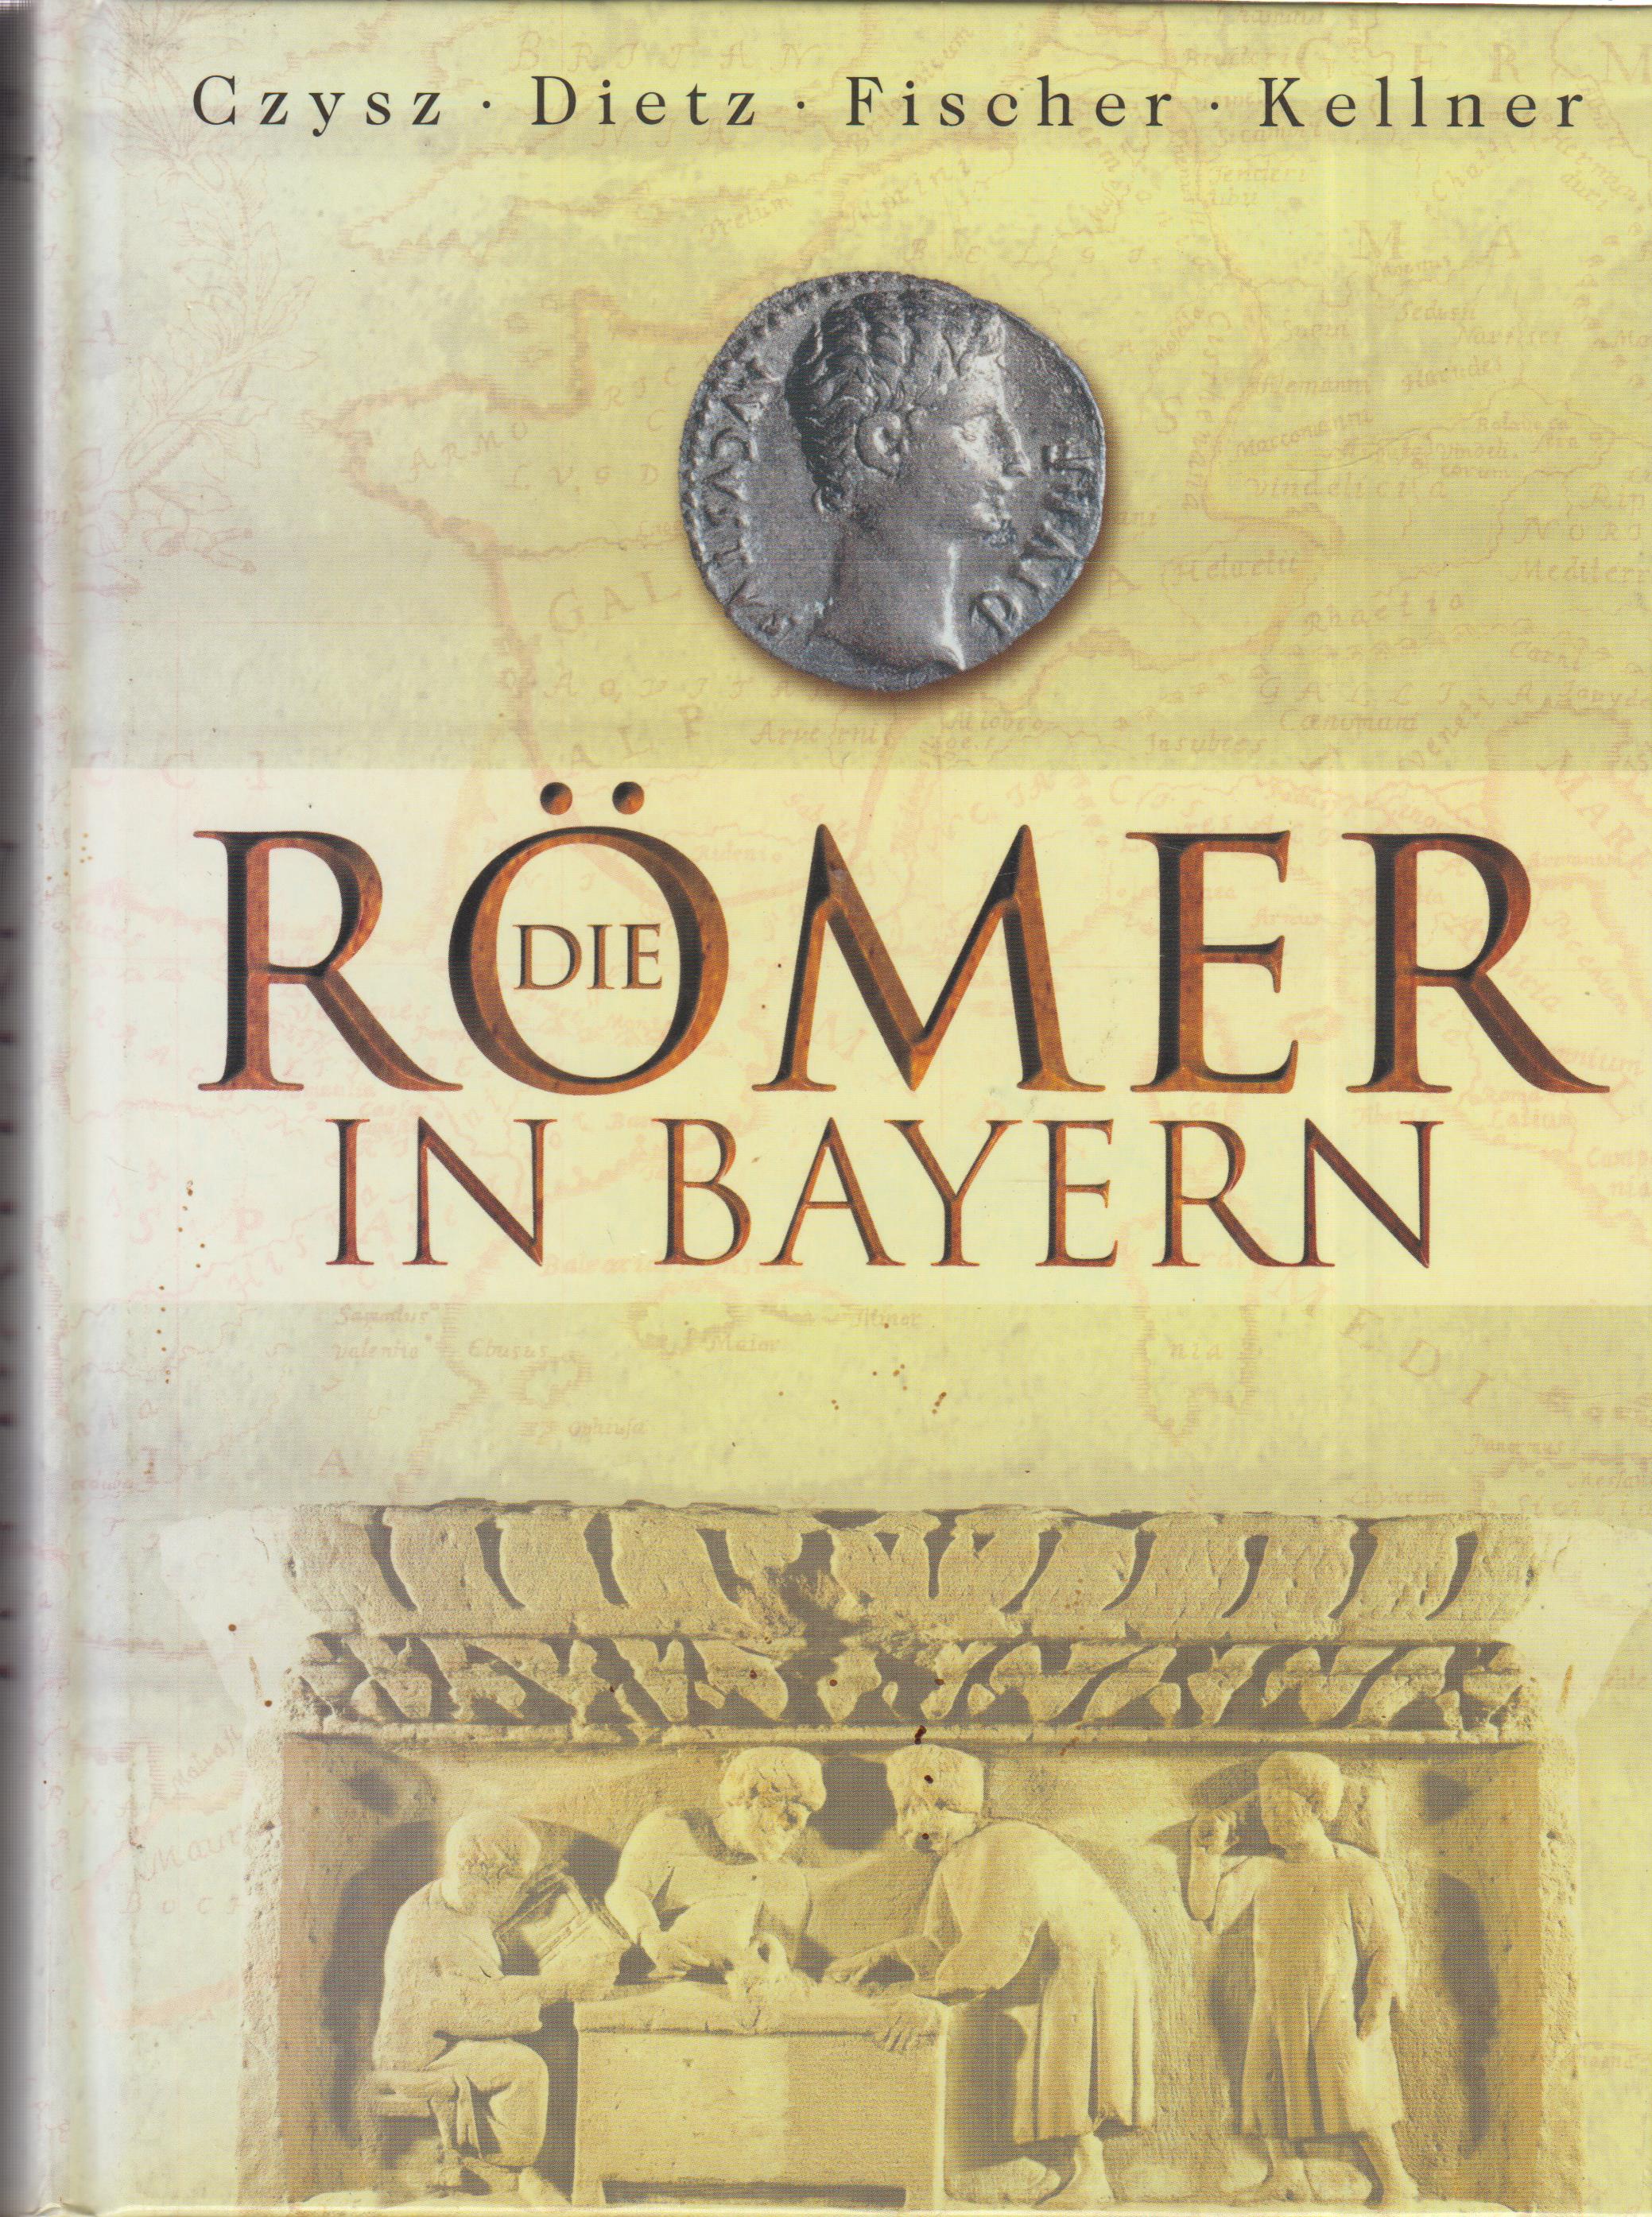 Die Römer in Bayern - Czysz, W. / Dietz, K. / Fischer, Th. u.a.